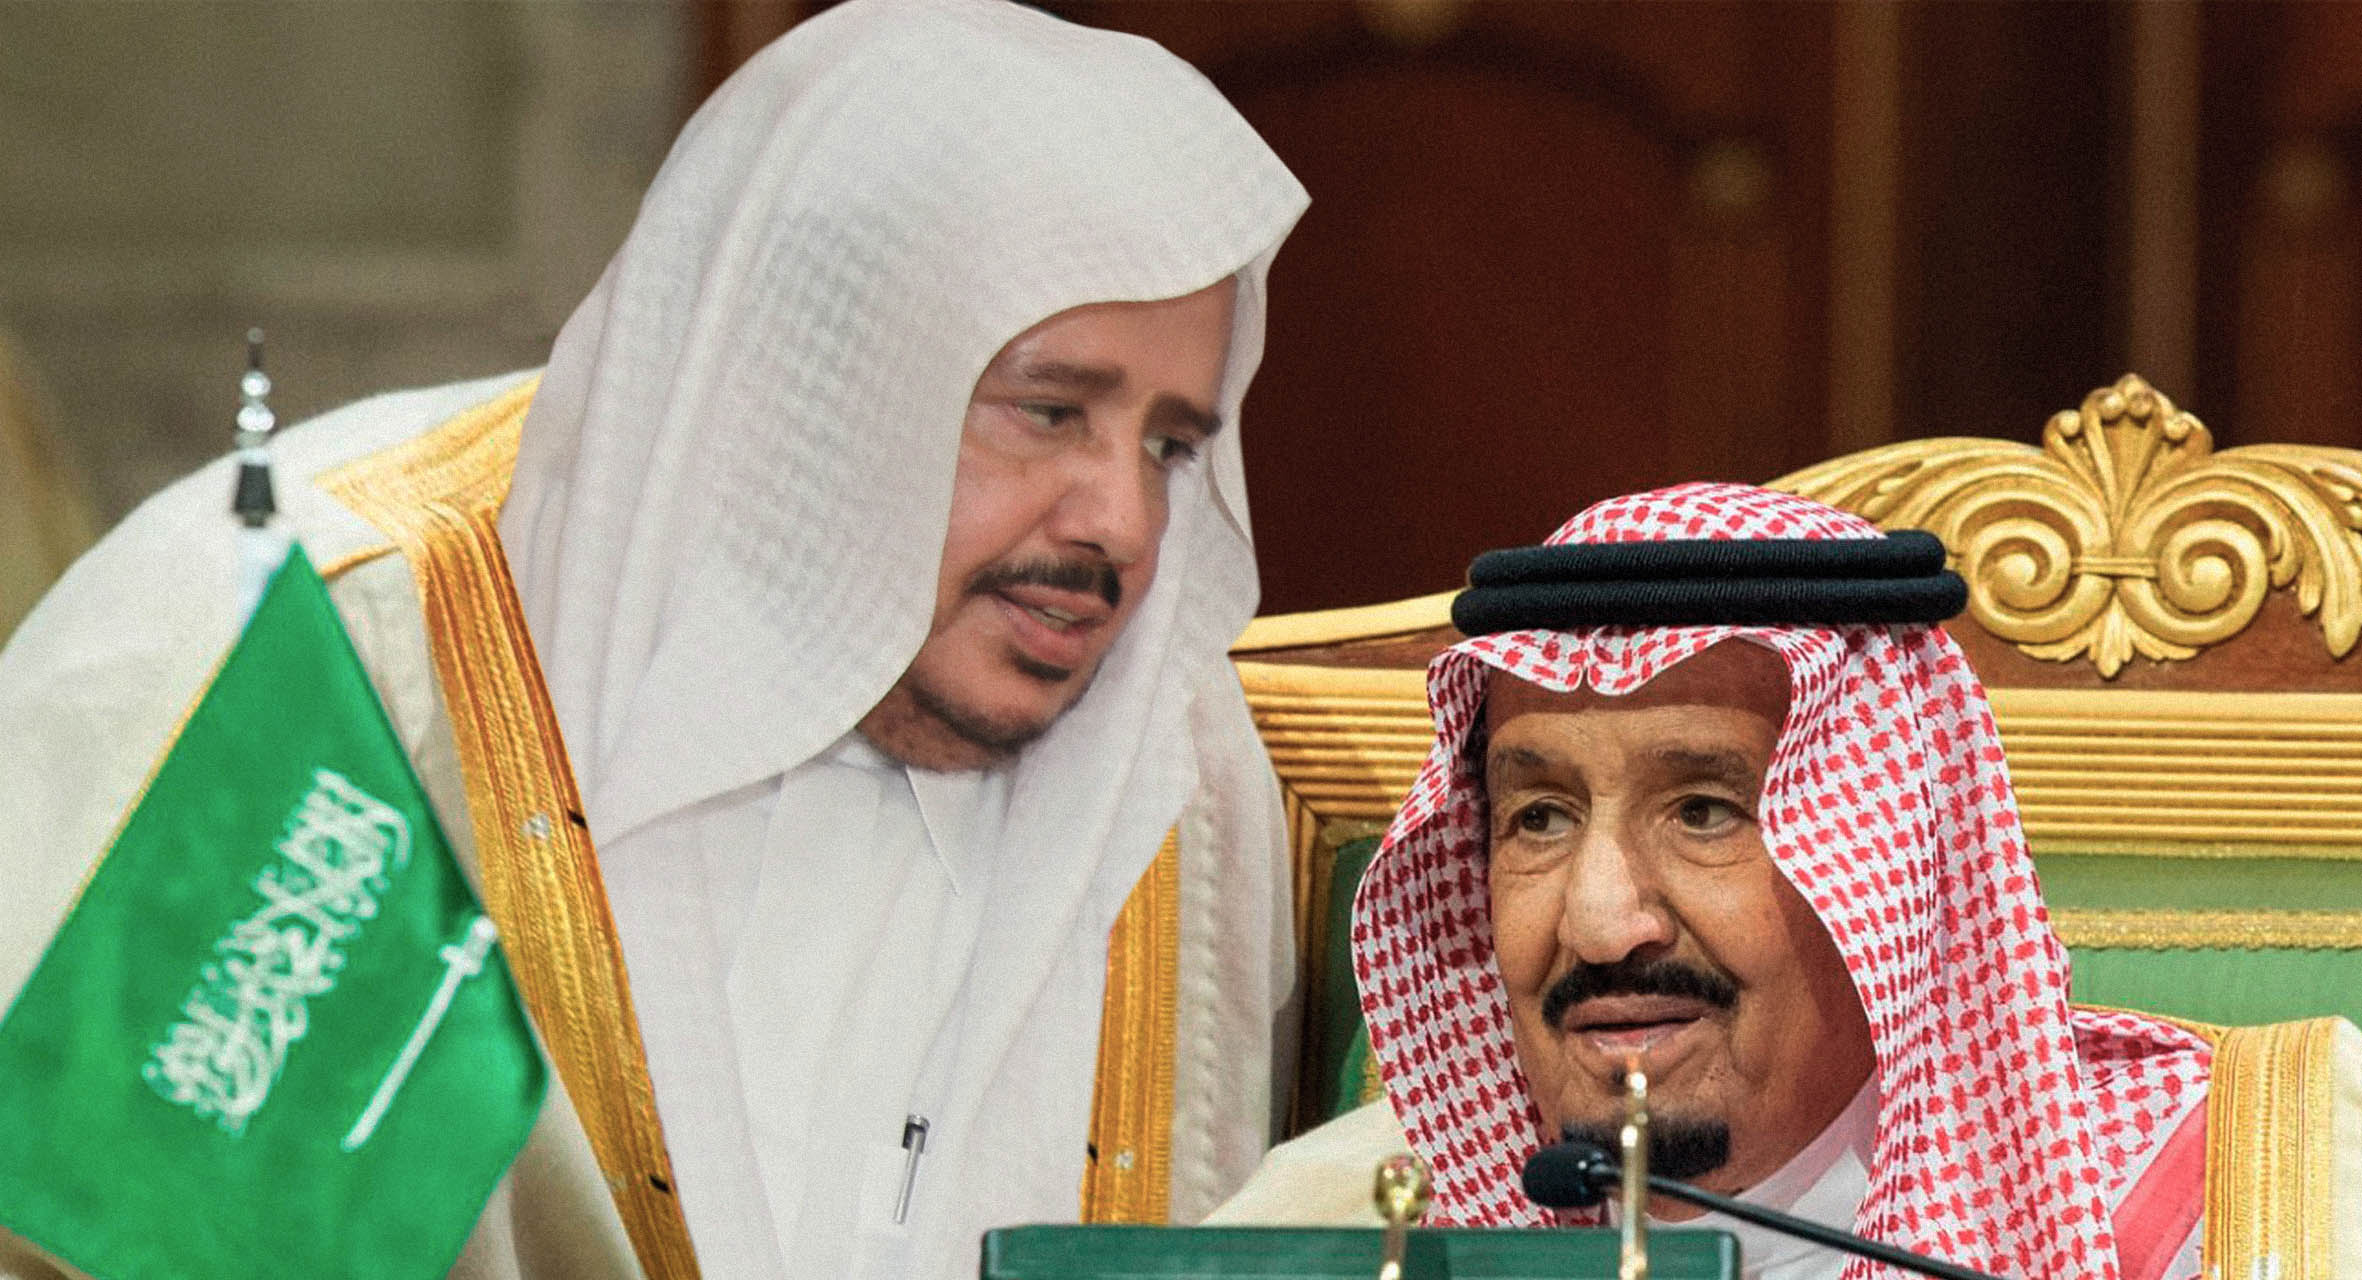 صورة ما حاجة السعودية لمجلس شورى؟ الحدود تسأل وأعضاء المجلس يستأذنون الملك للإجابة